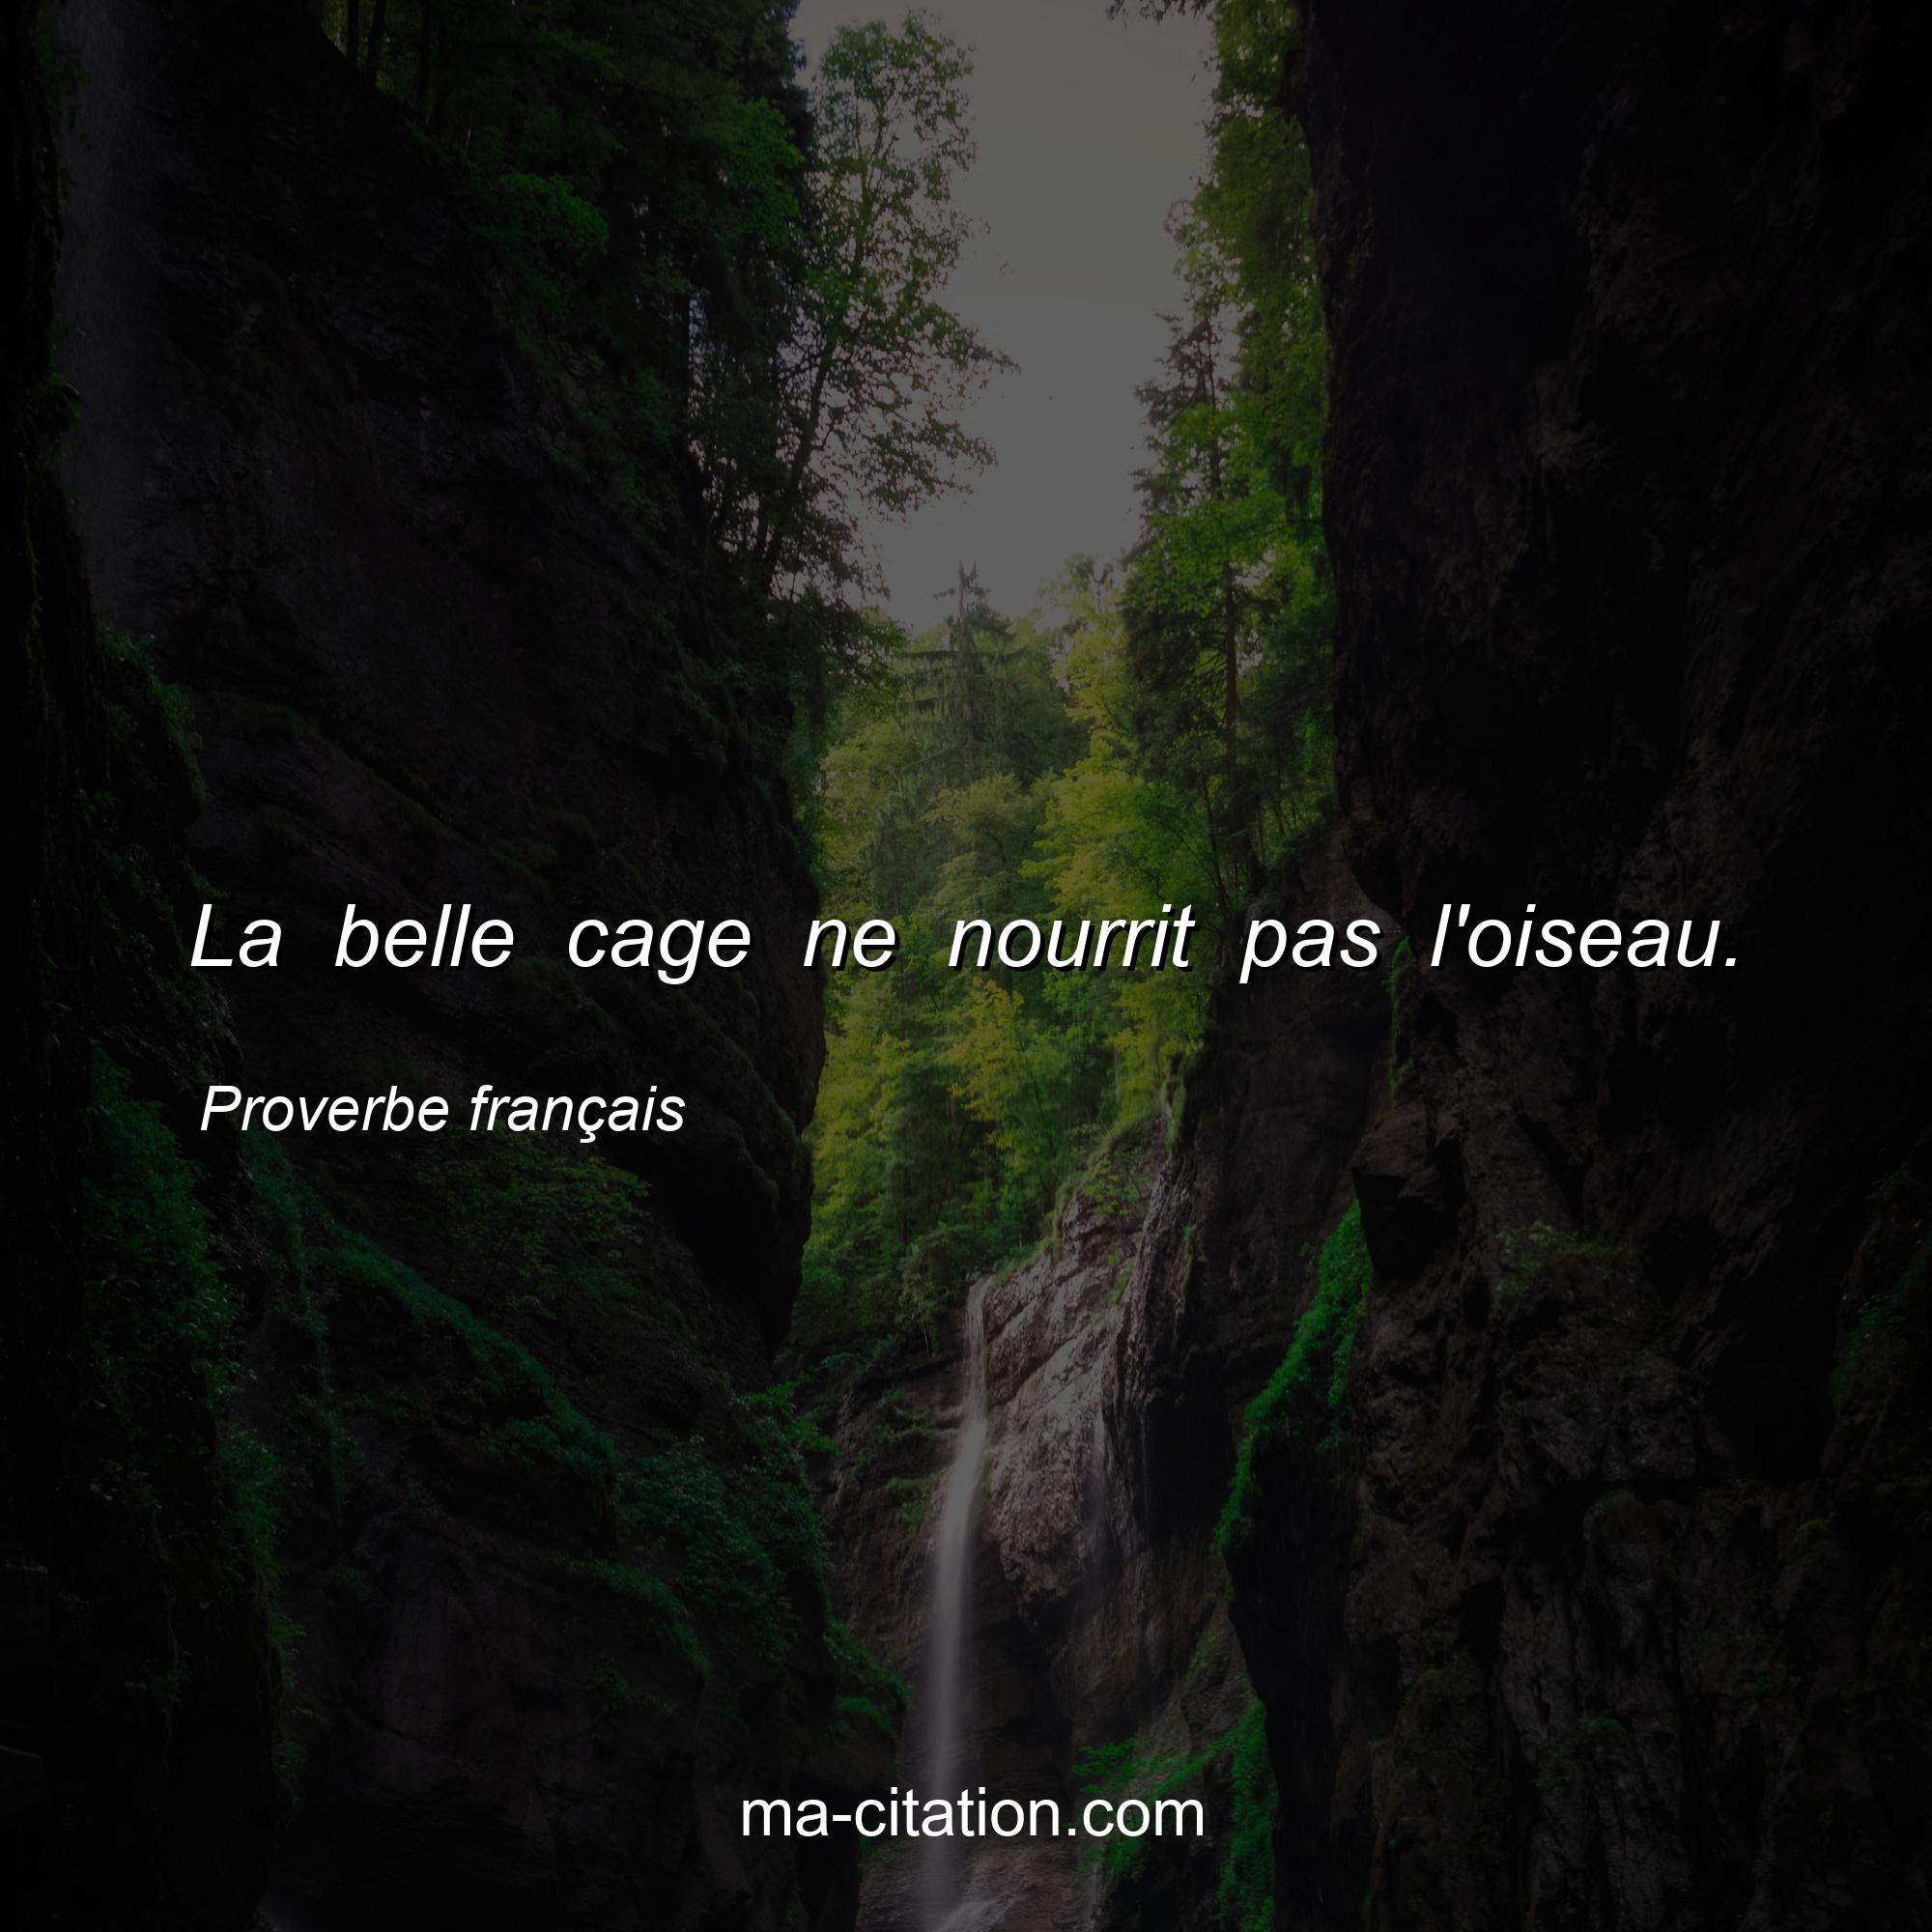 Proverbe français : La belle cage ne nourrit pas l'oiseau.